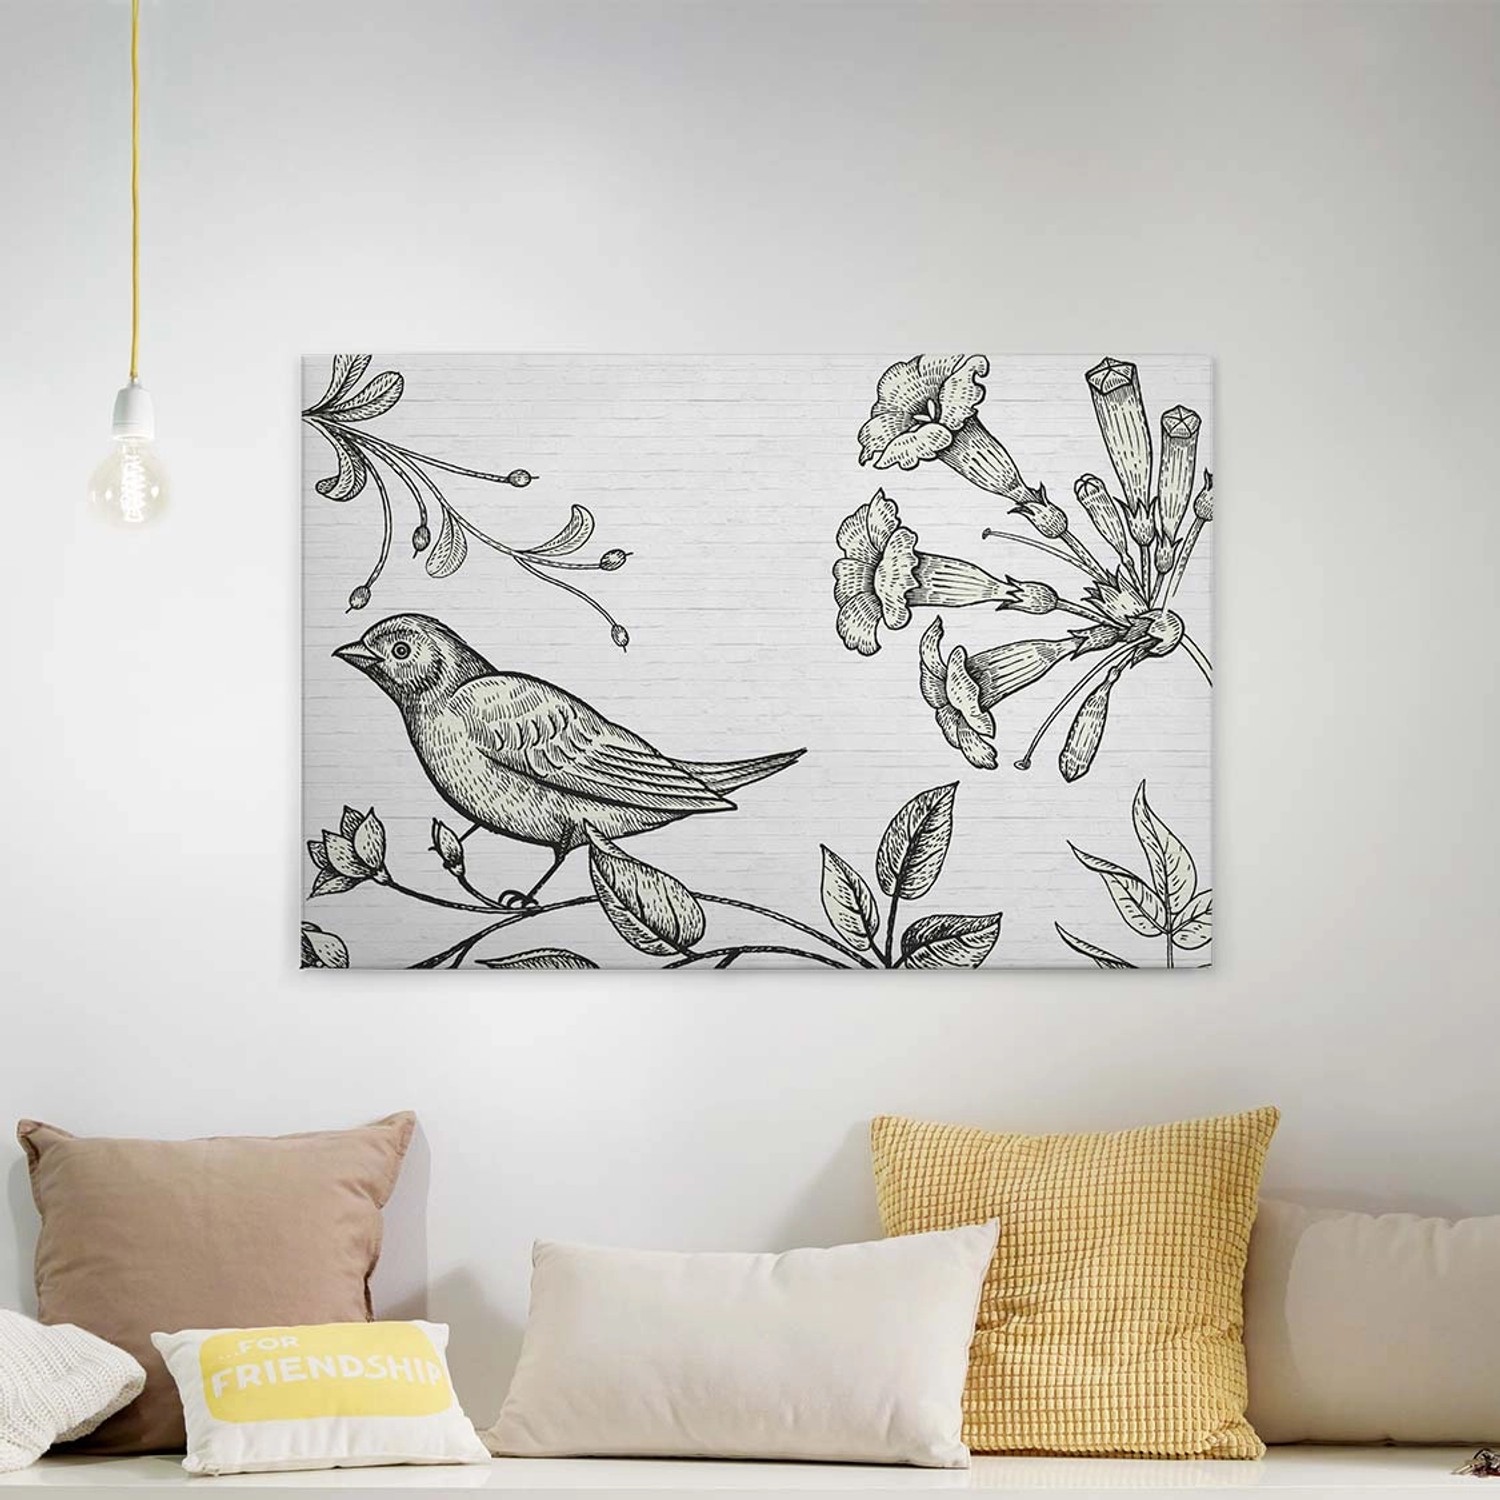 Bricoflor Leinwand Bild Mit Gezeichnetem Vogel Schwarz Weiß Botanik Industrial Style Leinwandbild In Holzschnitt Optik W